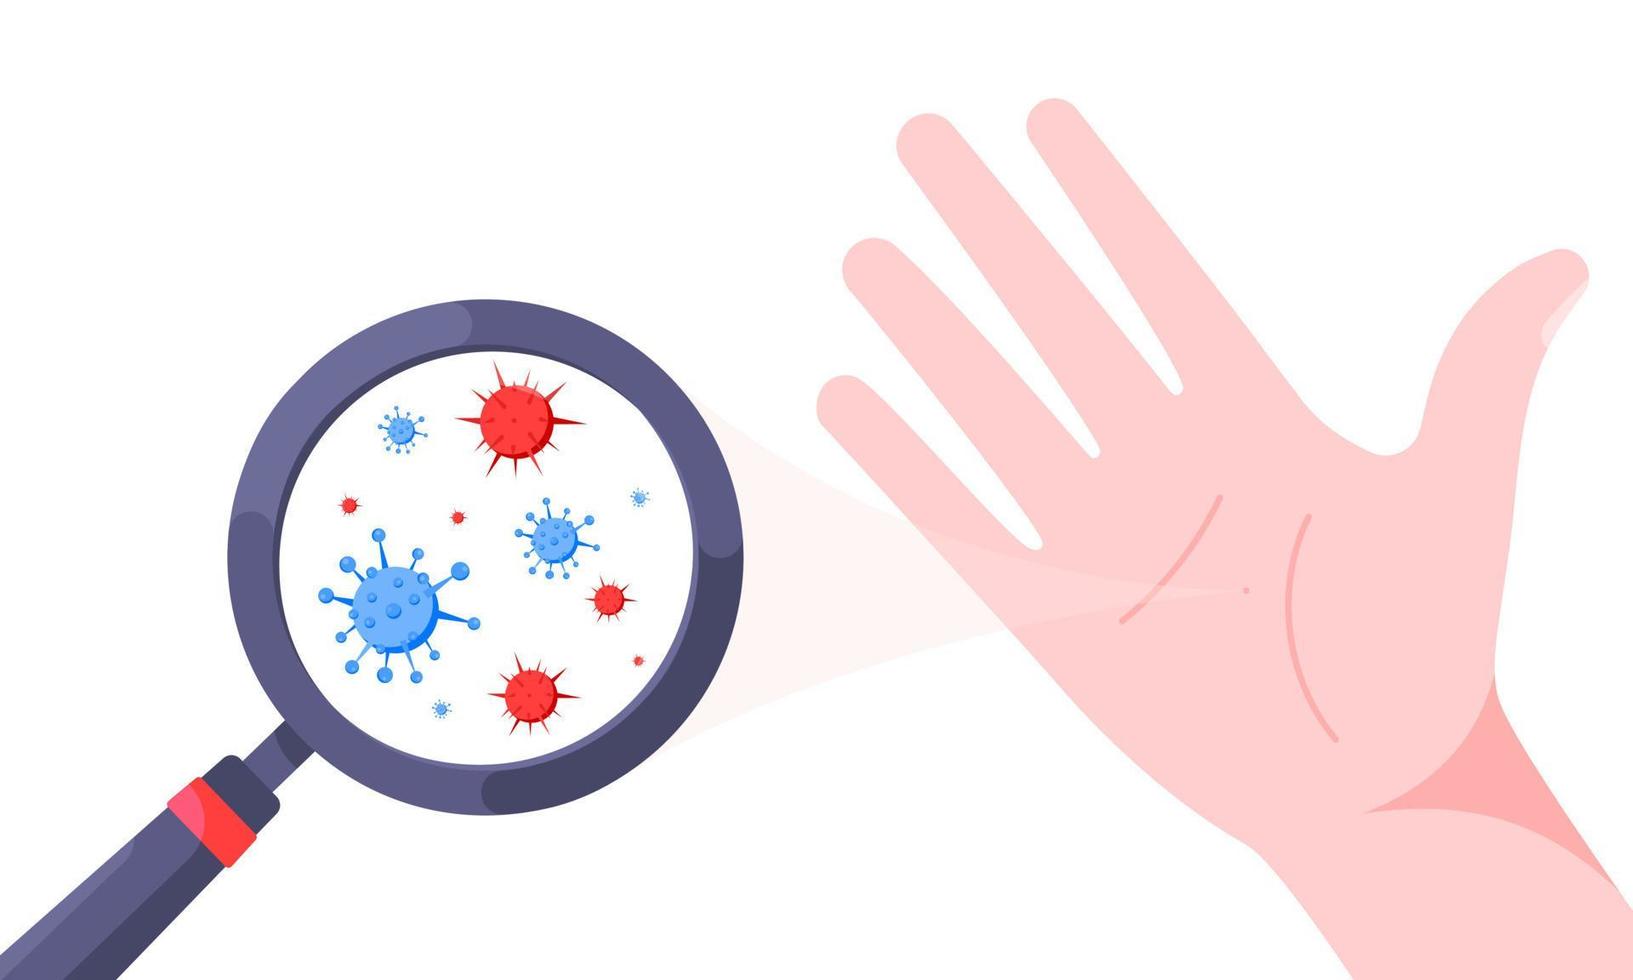 gérmenes, bacterias y virus en la ilustración de vector de palma de mano sucia aislado sobre fondo blanco.